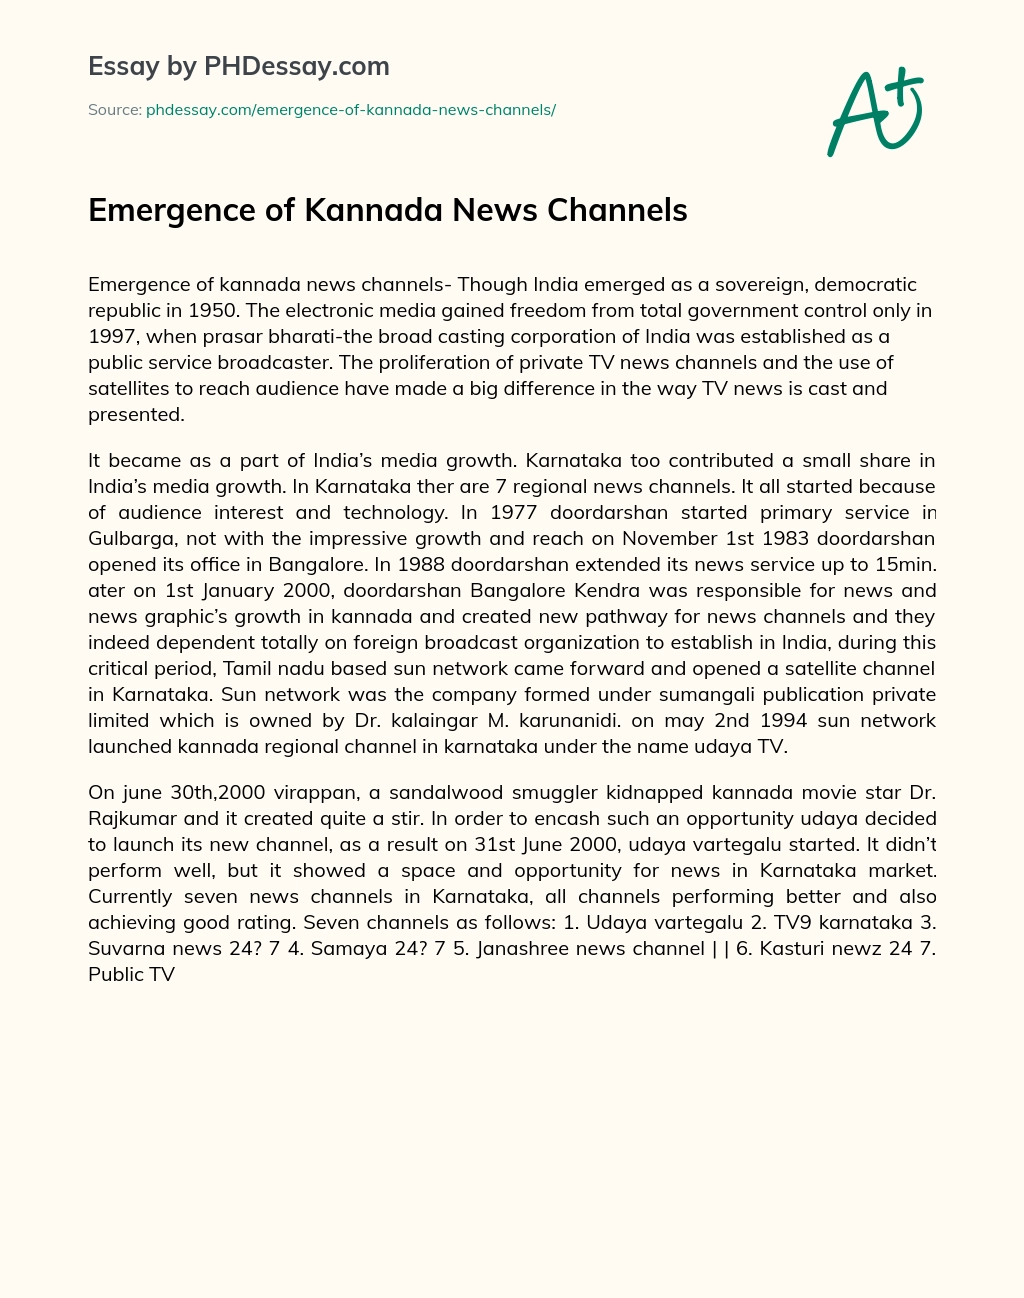 Emergence of Kannada News Channels essay